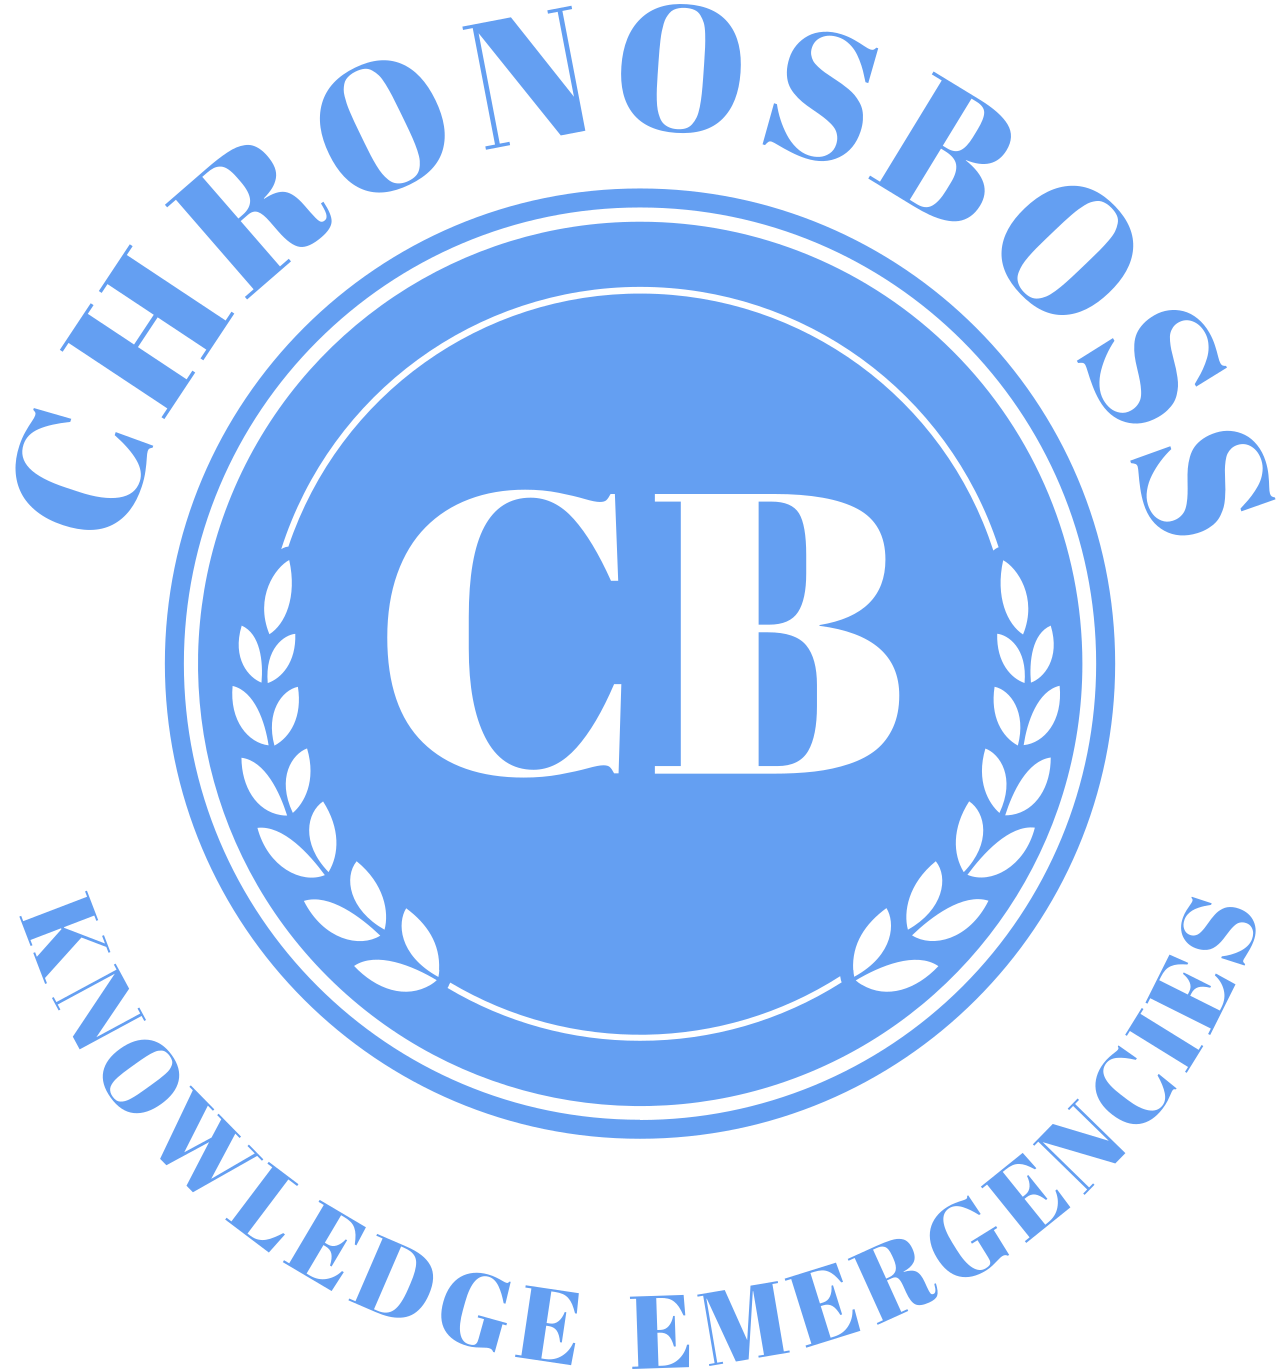 CHRONOSBOSS's logo